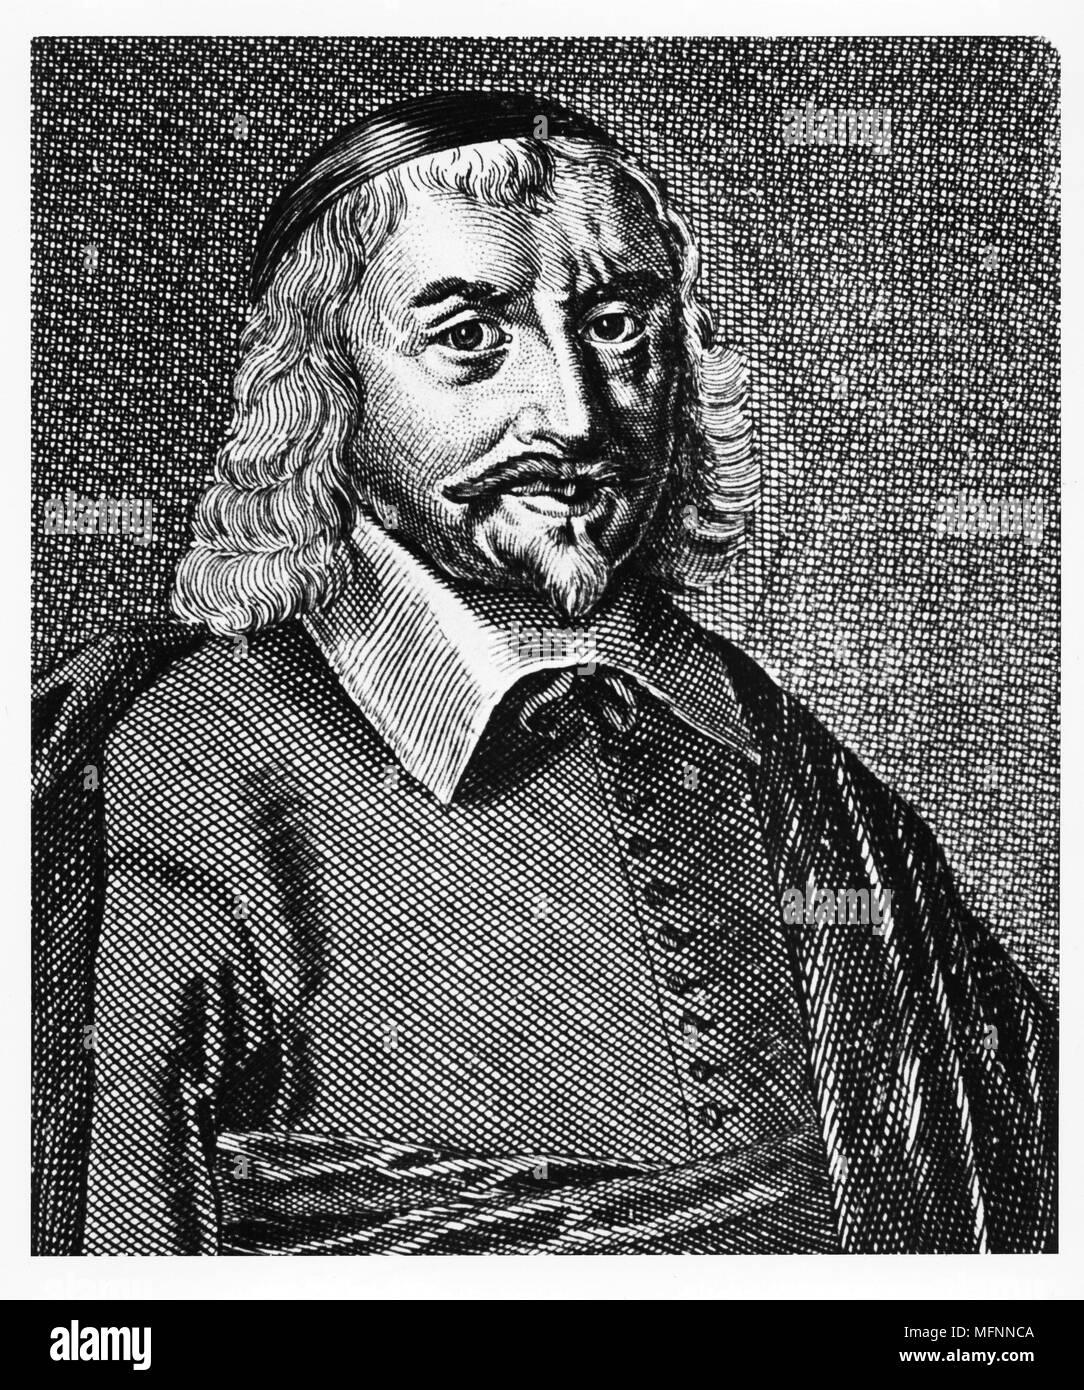 Thomas Hobbes (1588-1679) Englische politische Philosoph, in Malmesbury, Wiltshire geboren. Für die absolute Regel argumentiert. Gravur. Achtzehnten Jahrhundert Gravur. Stockfoto